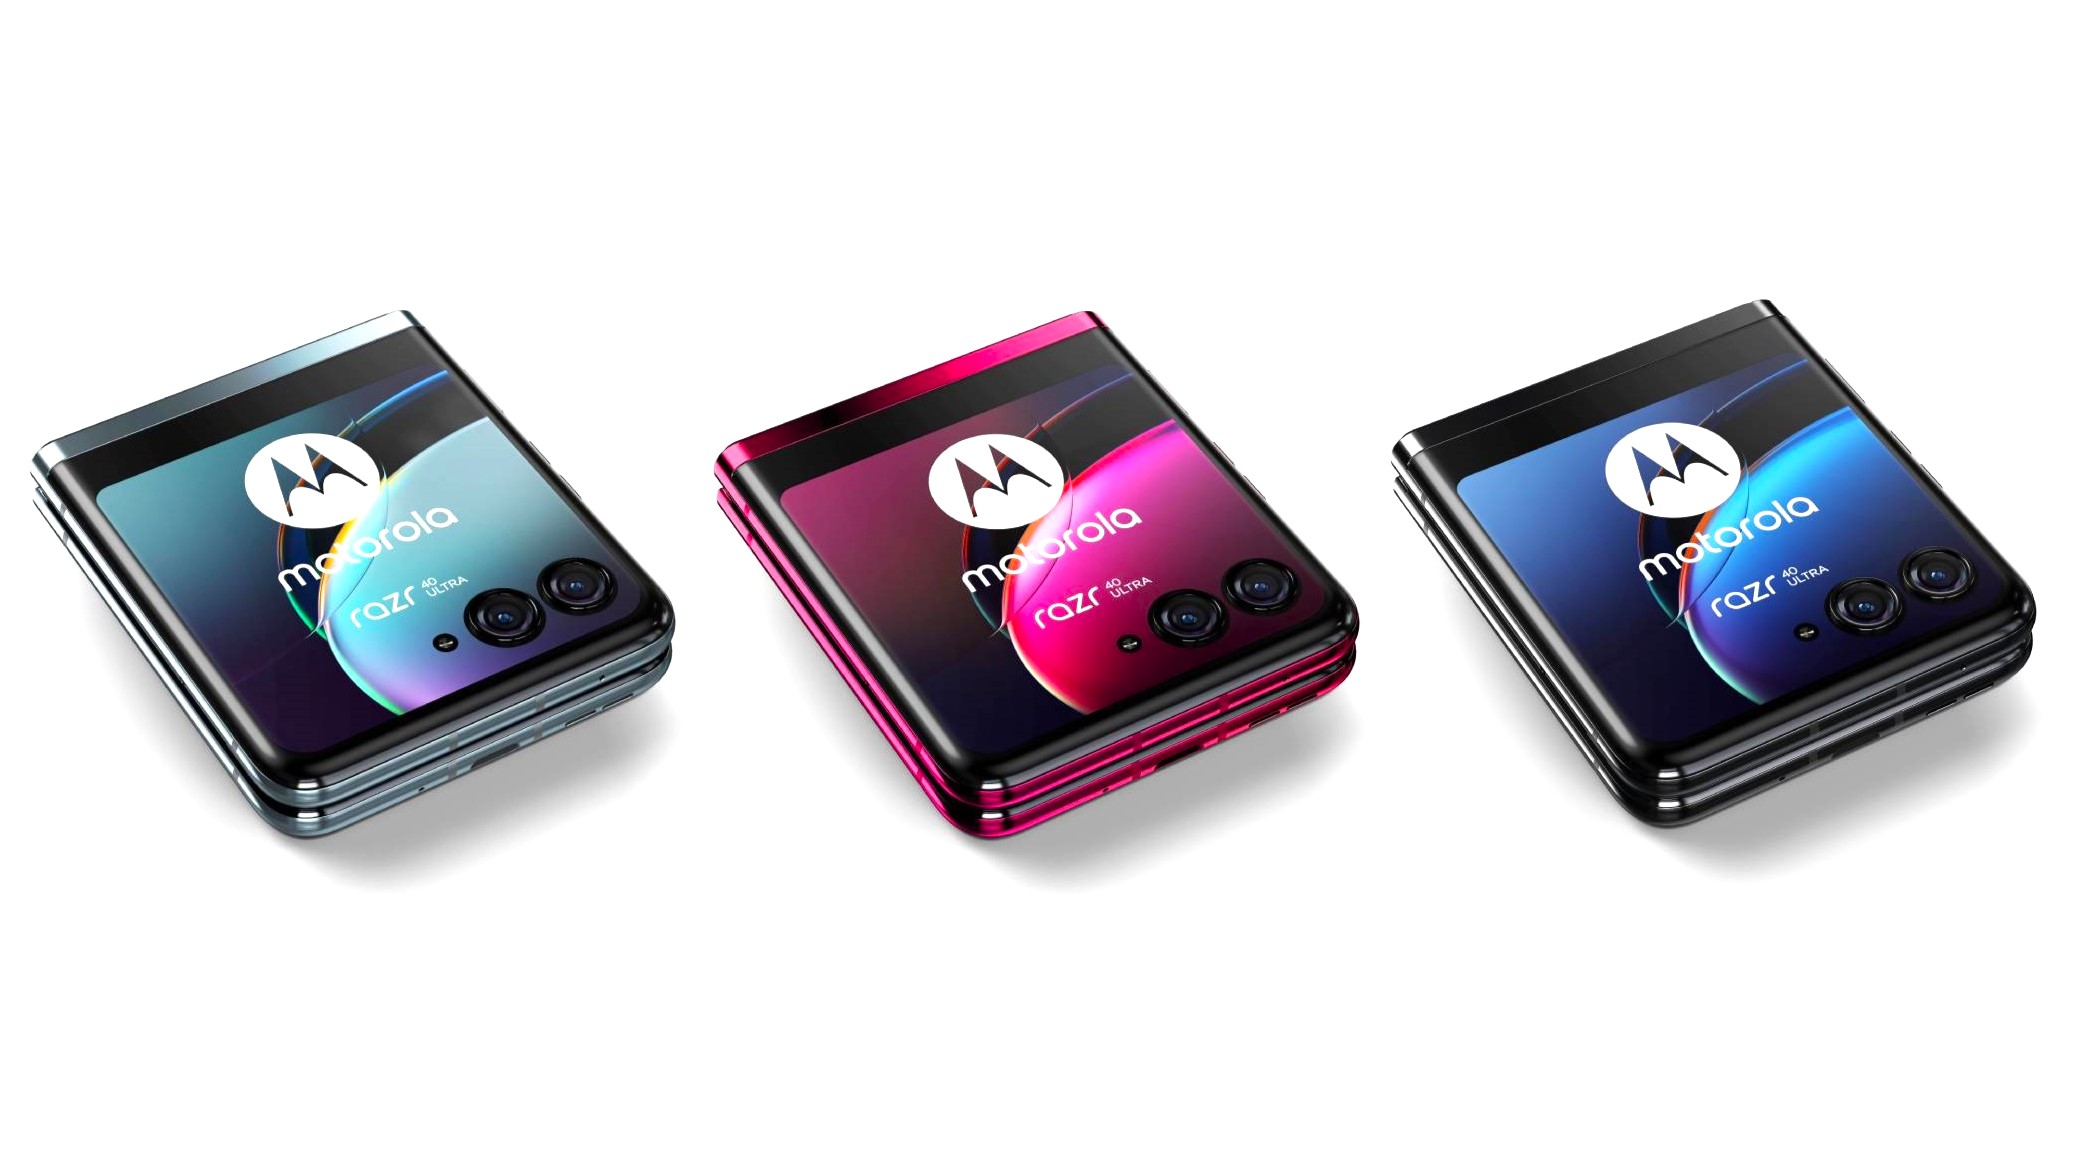 Pronto será lanzado el Motorola MA1, adaptador inalámbrico para